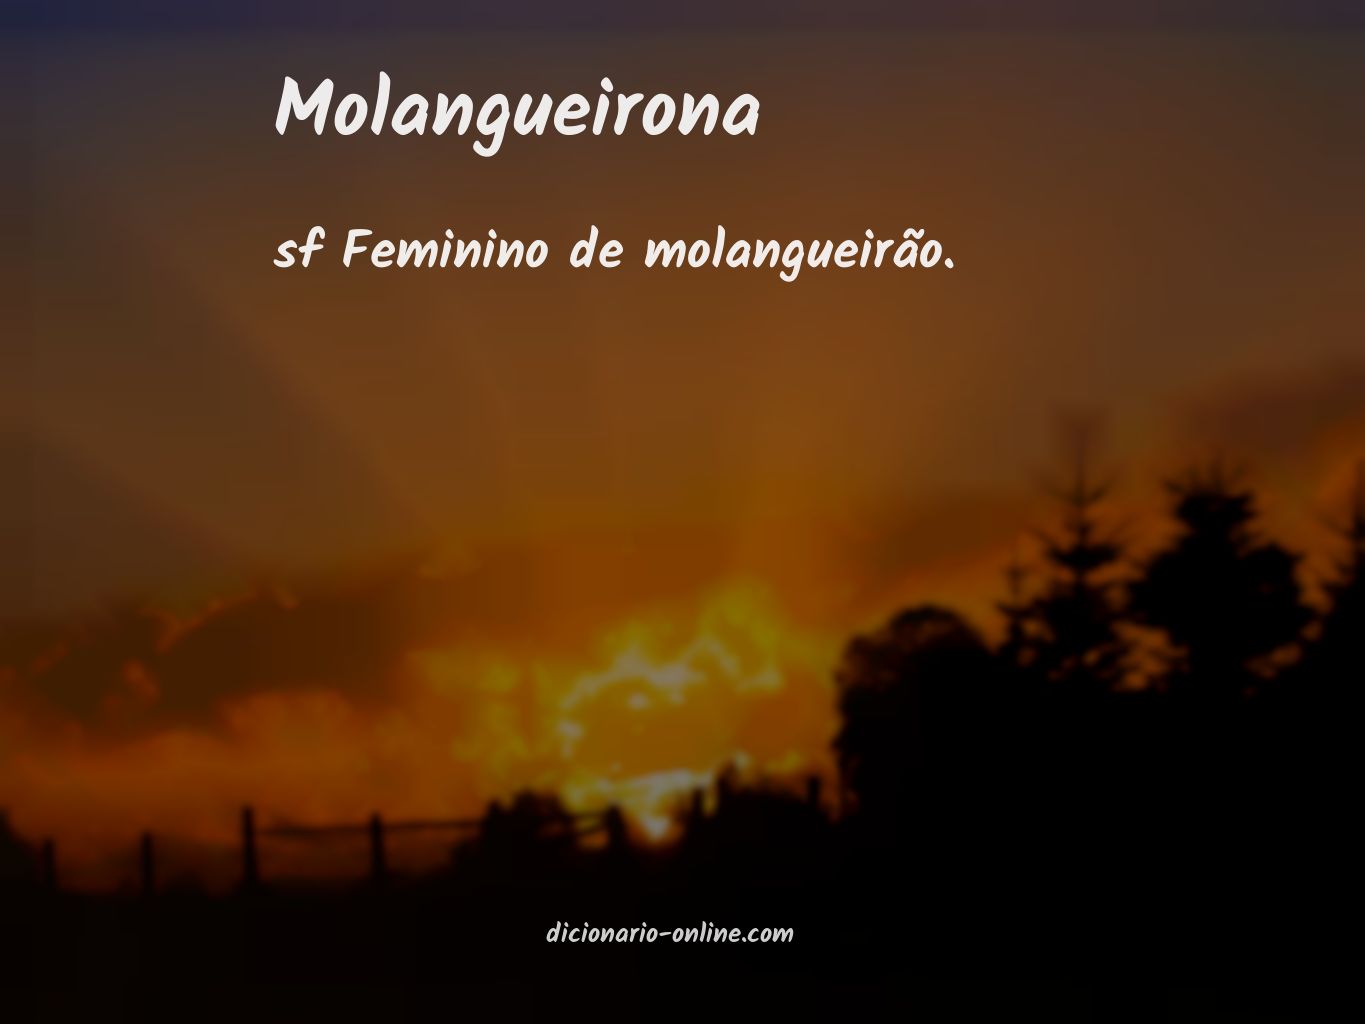 Significado de molangueirona